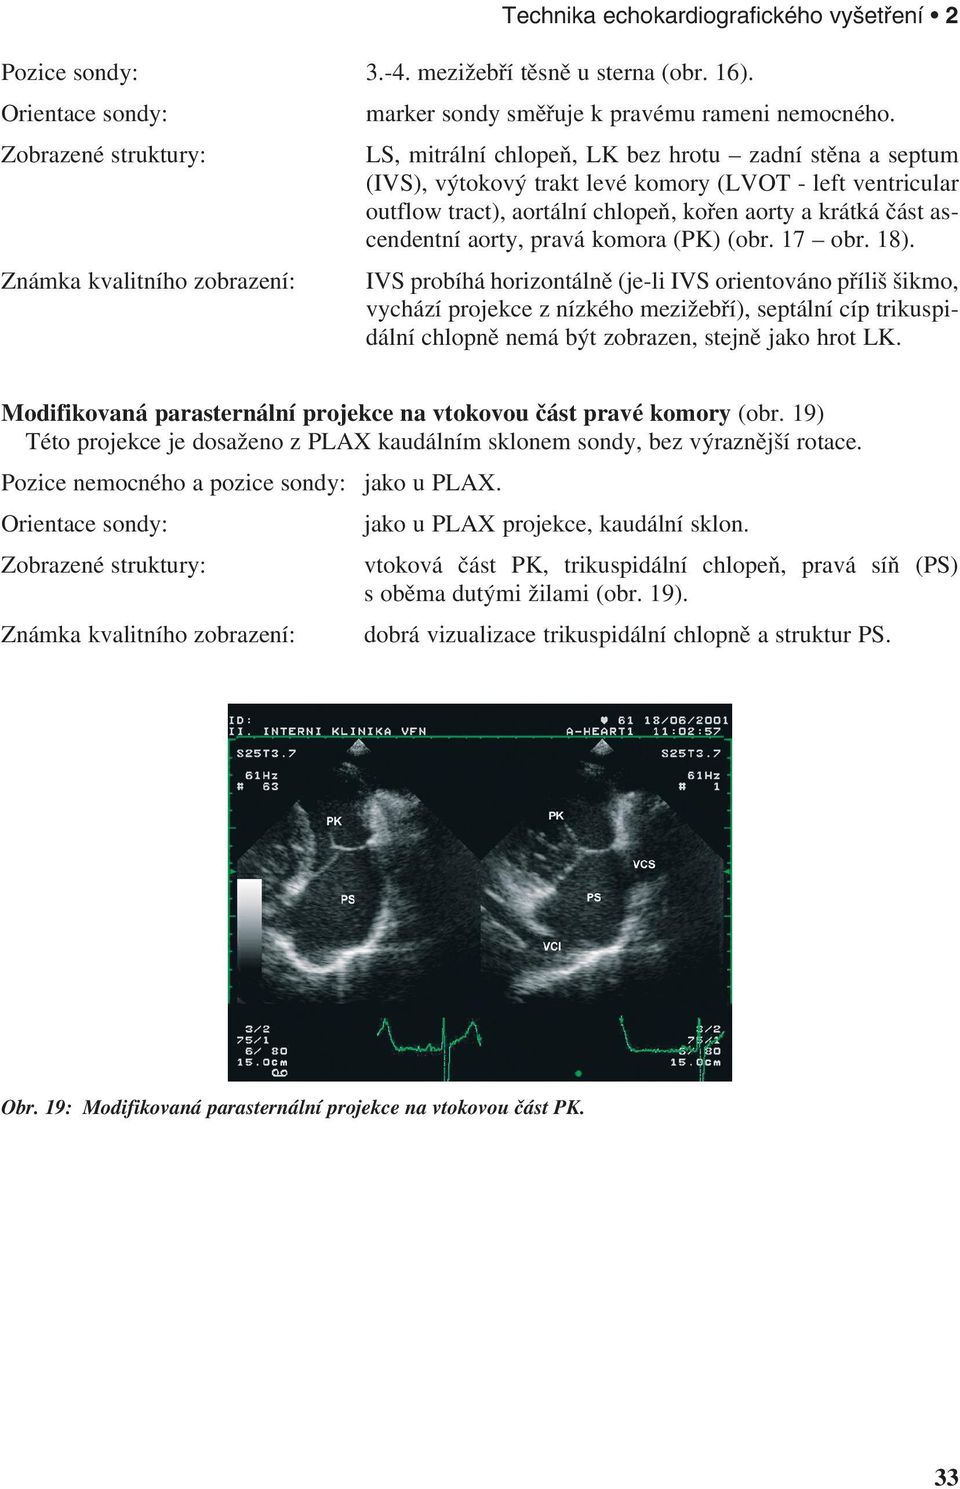 ascendentní aorty, pravá komora (PK) (obr. 17 obr. 18).